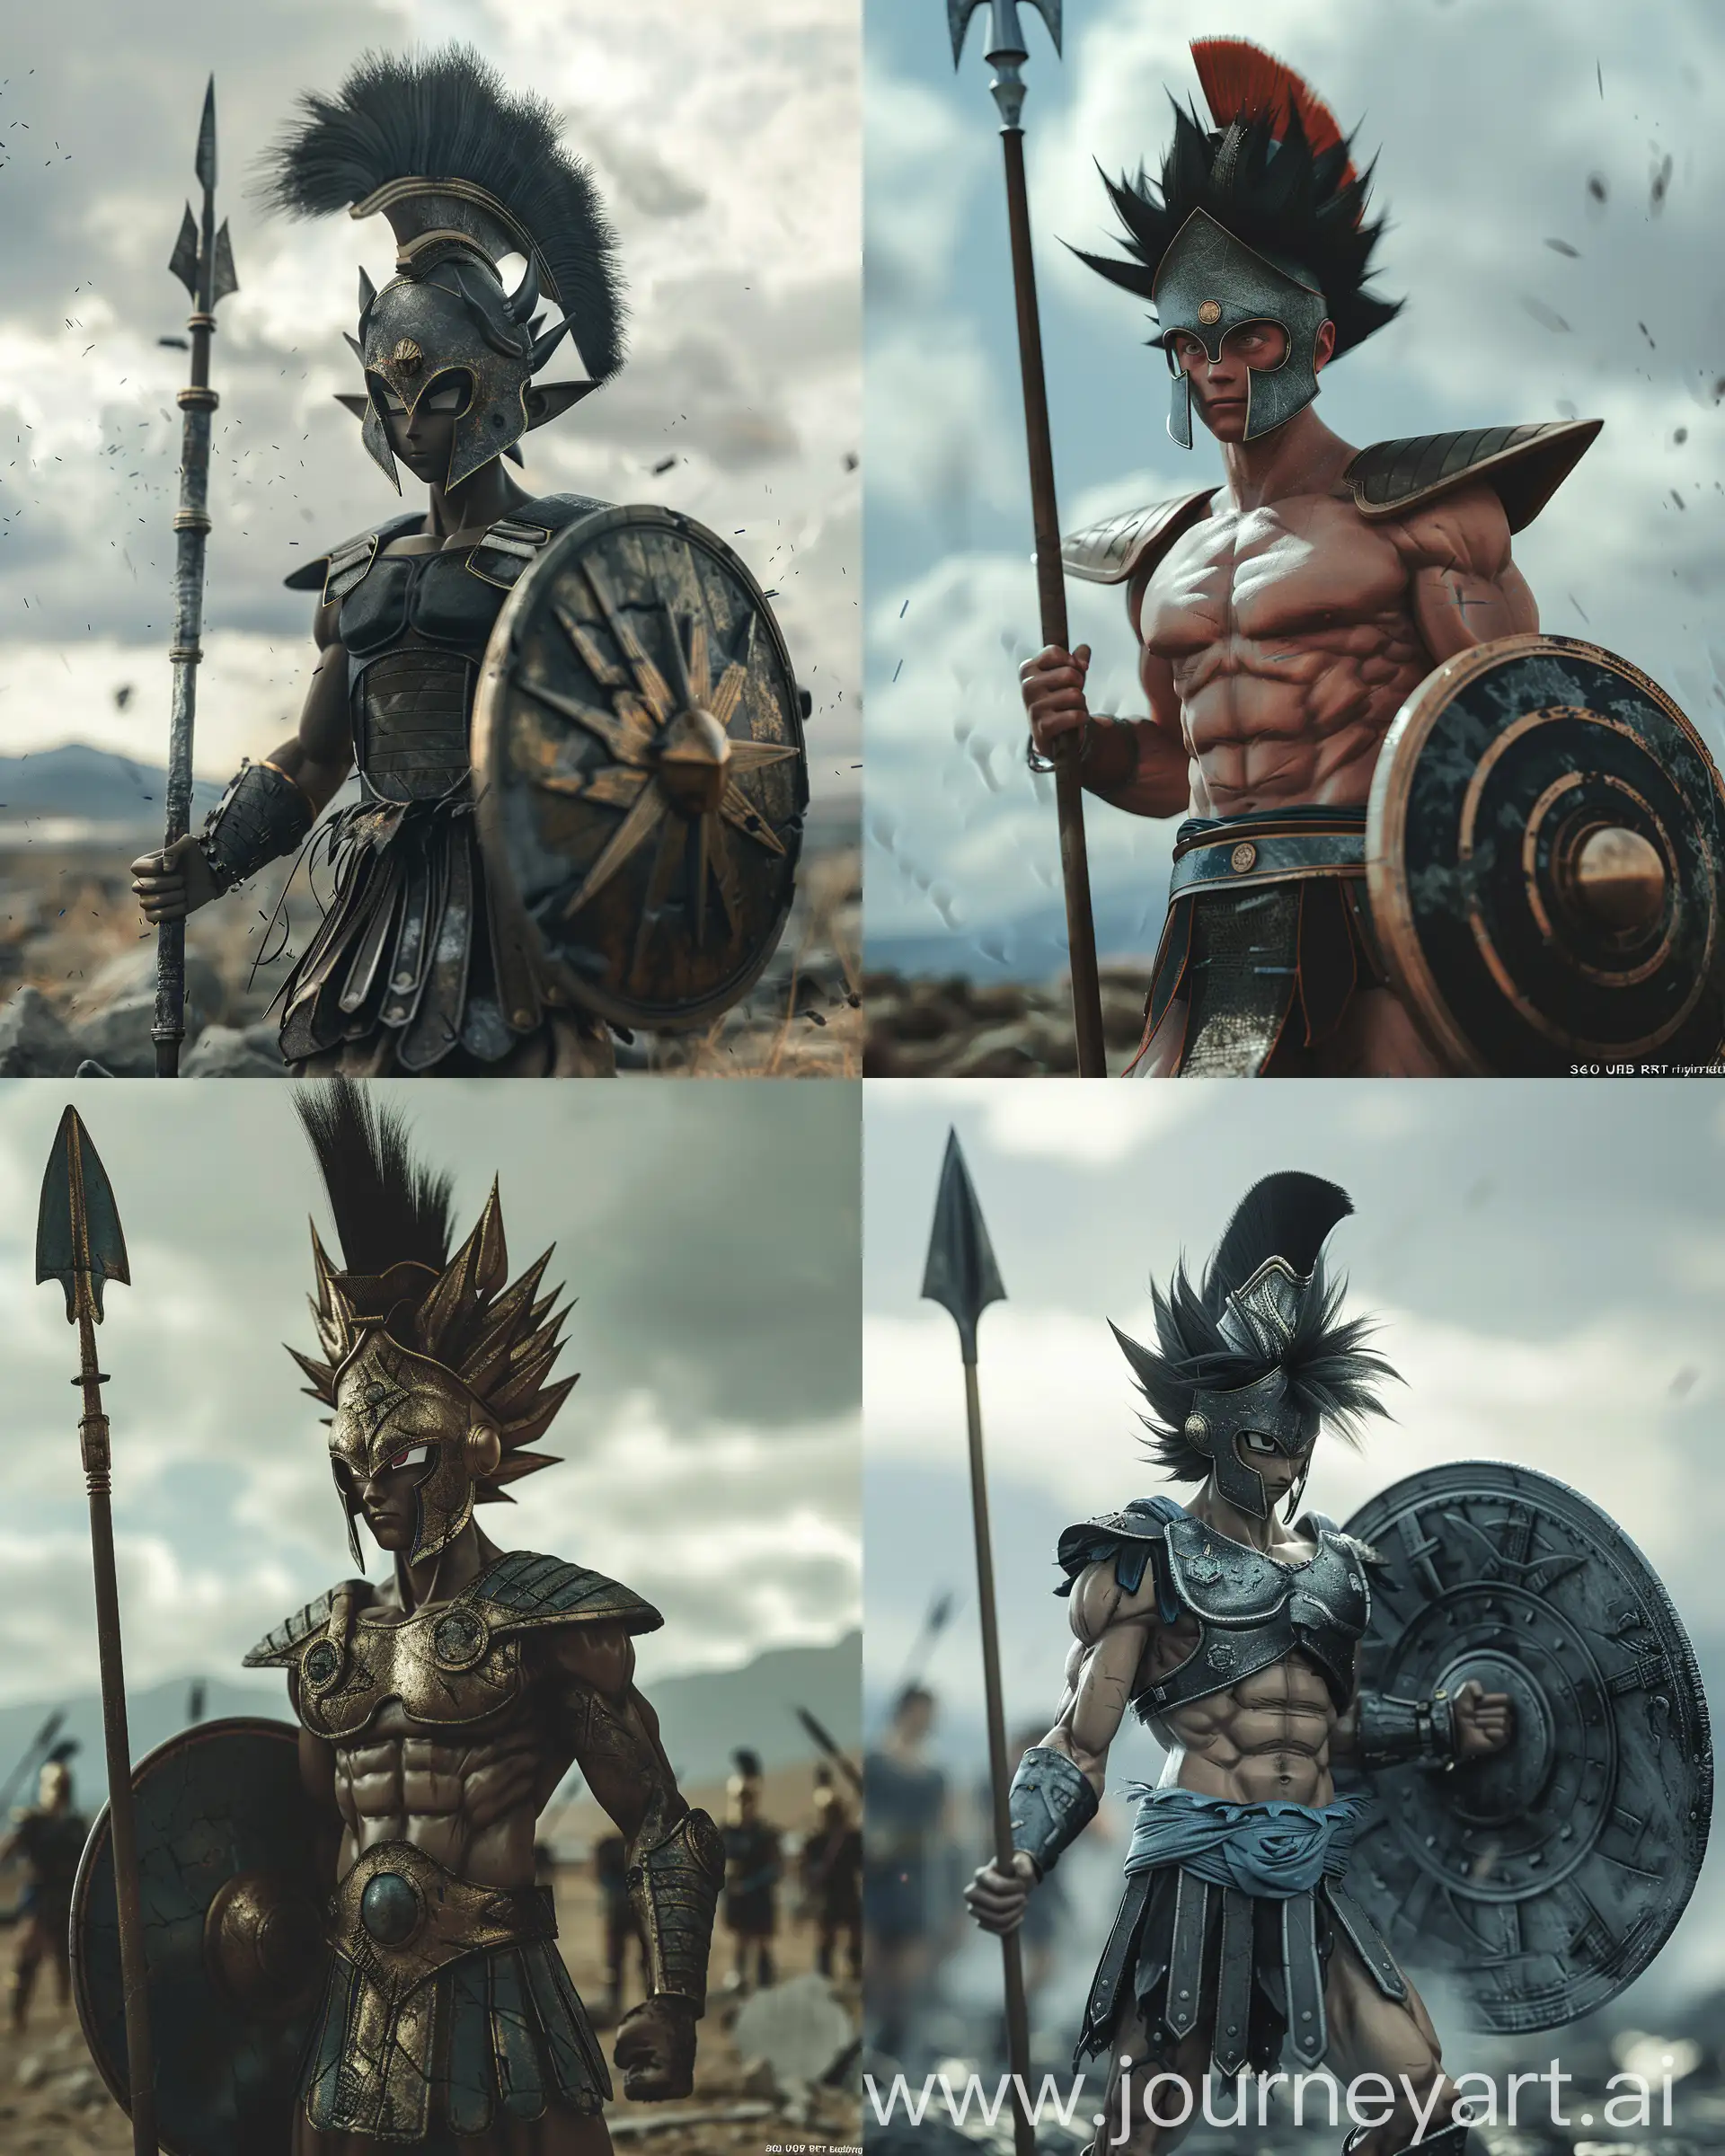 Dragon-Ball-Goku-as-Spartan-Warrior-in-Battleground